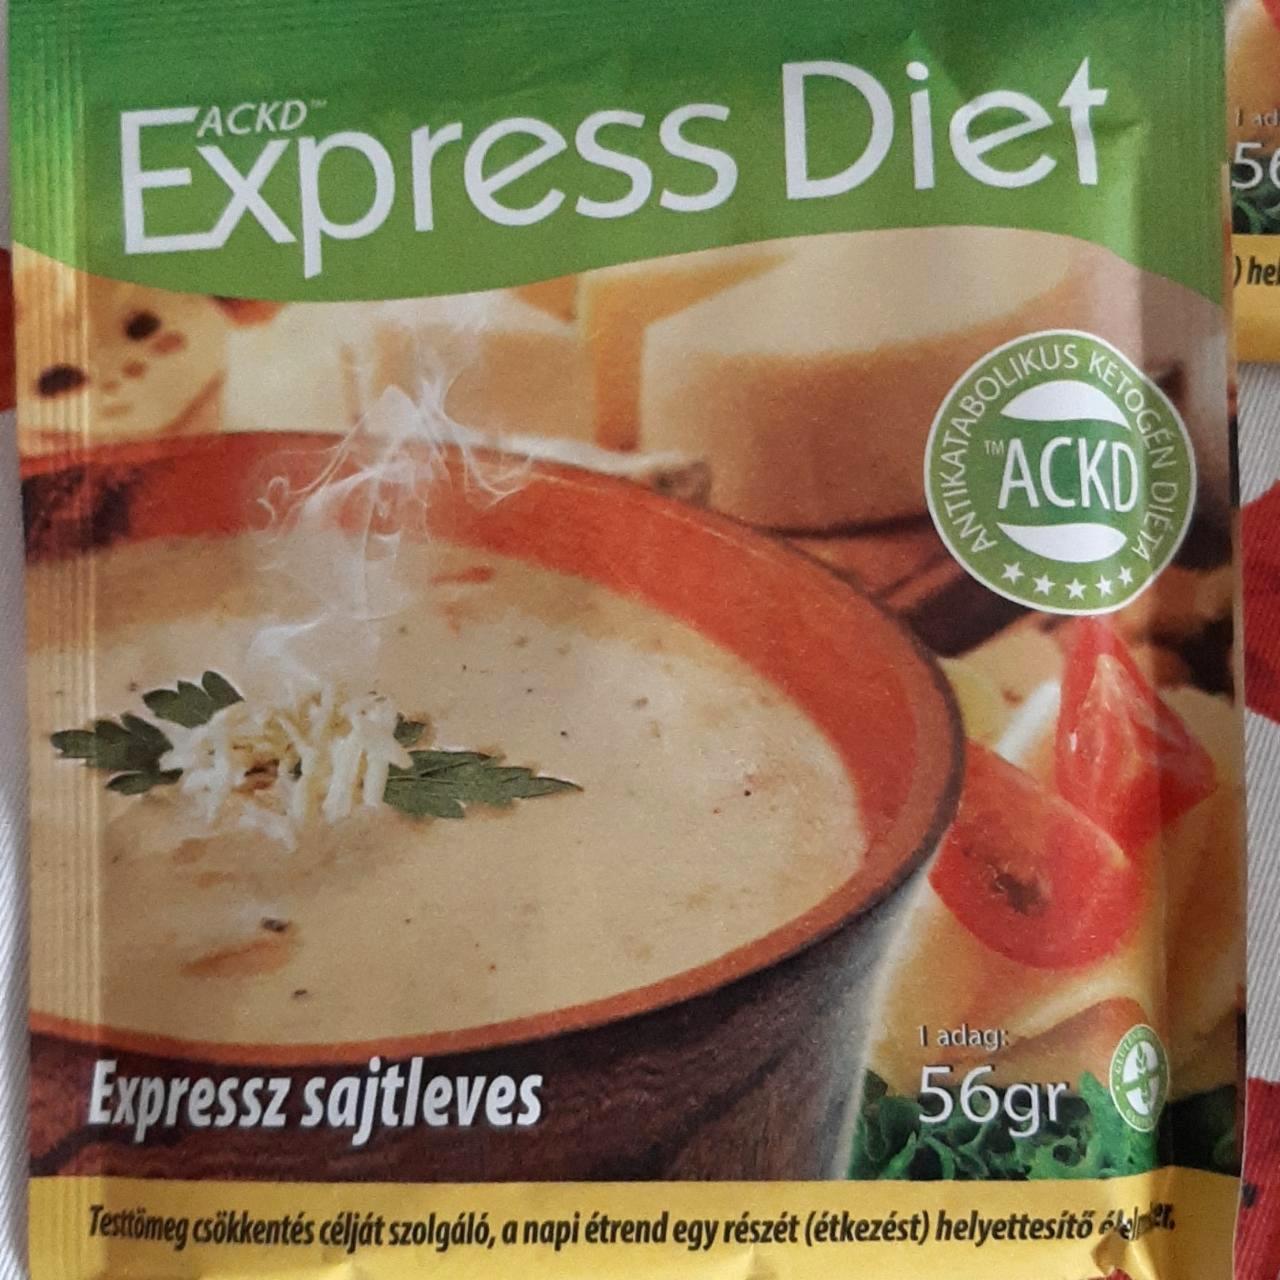 Képek - Expressz sajtleves Express Diet